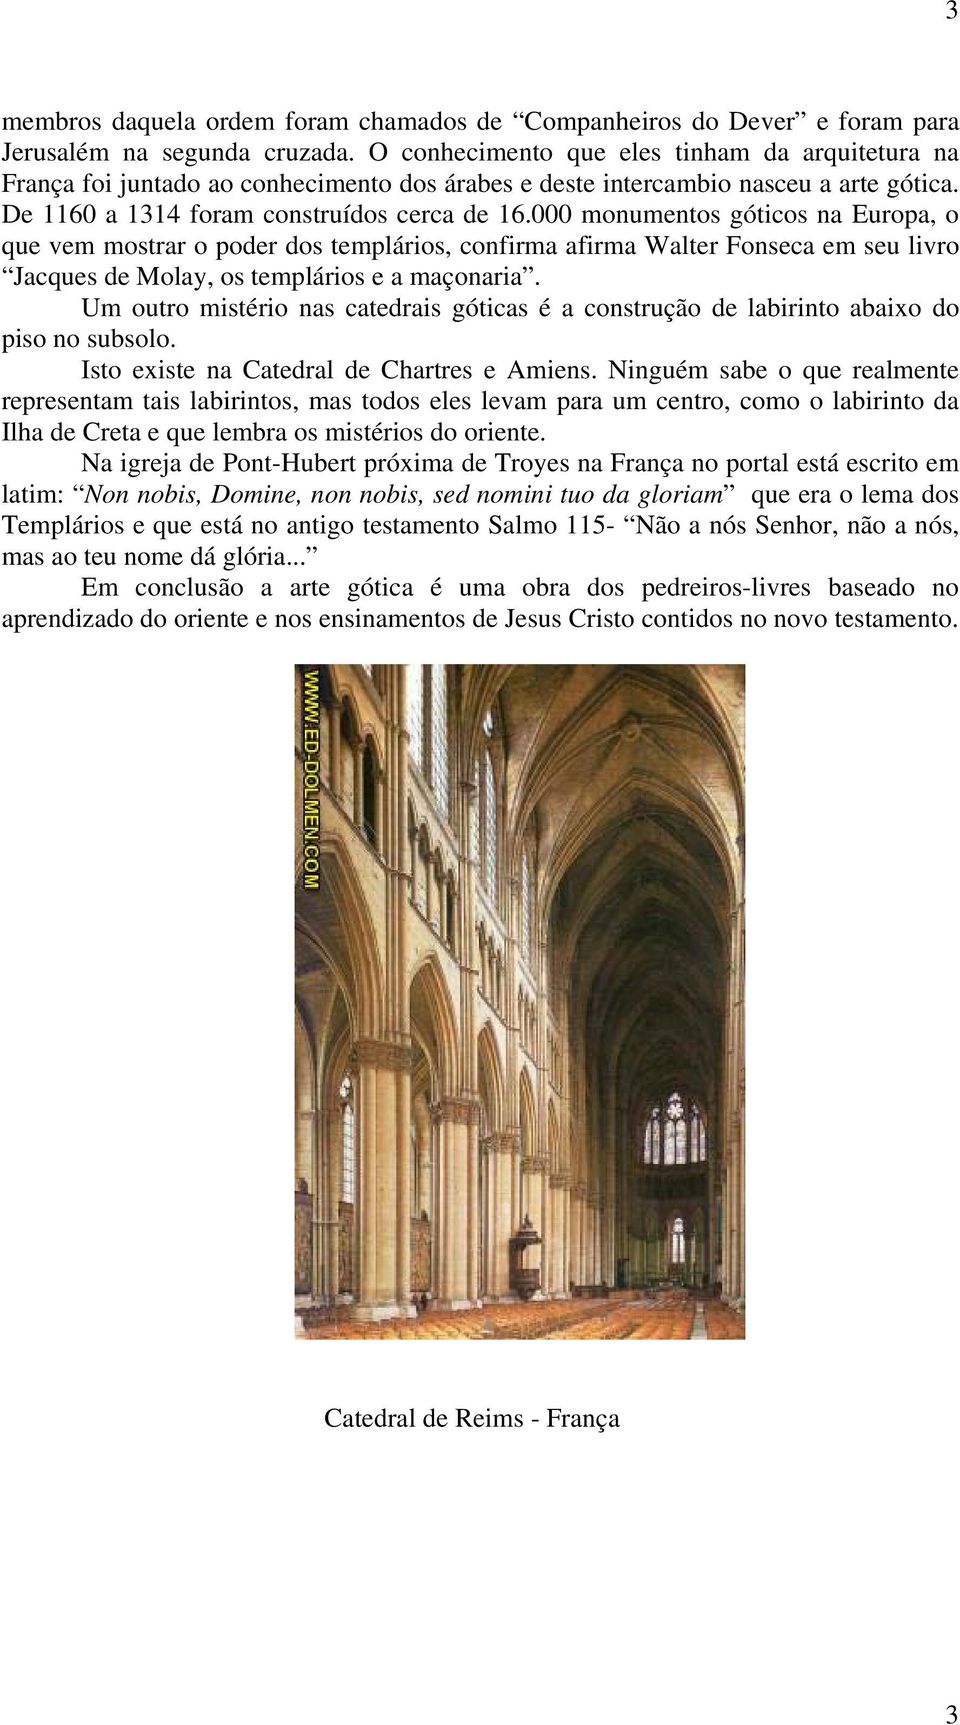 000 monumentos góticos na Europa, o que vem mostrar o poder dos templários, confirma afirma Walter Fonseca em seu livro Jacques de Molay, os templários e a maçonaria.